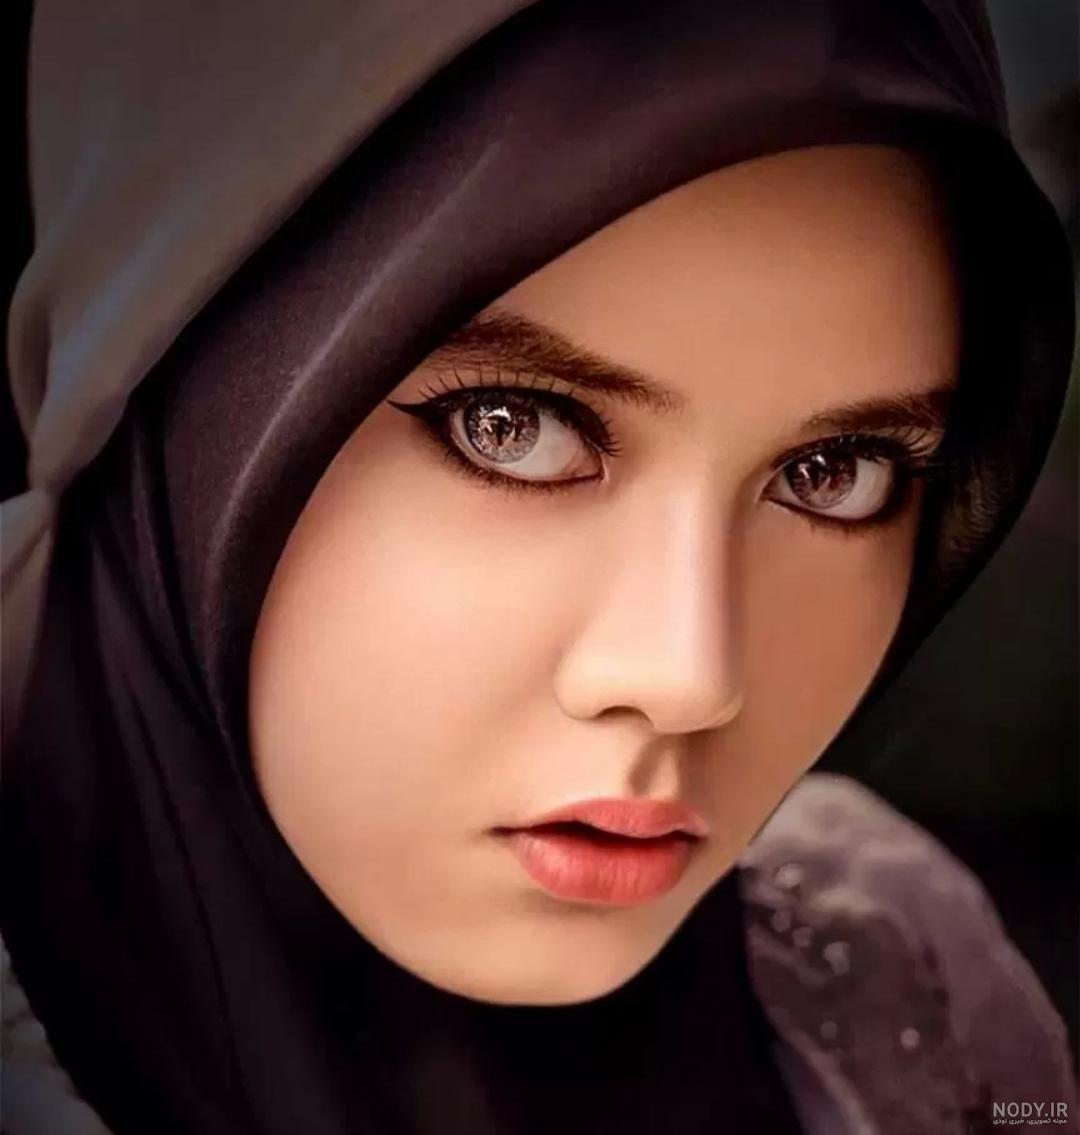 عکس دختر با حجاب زیبا برای پروفایل